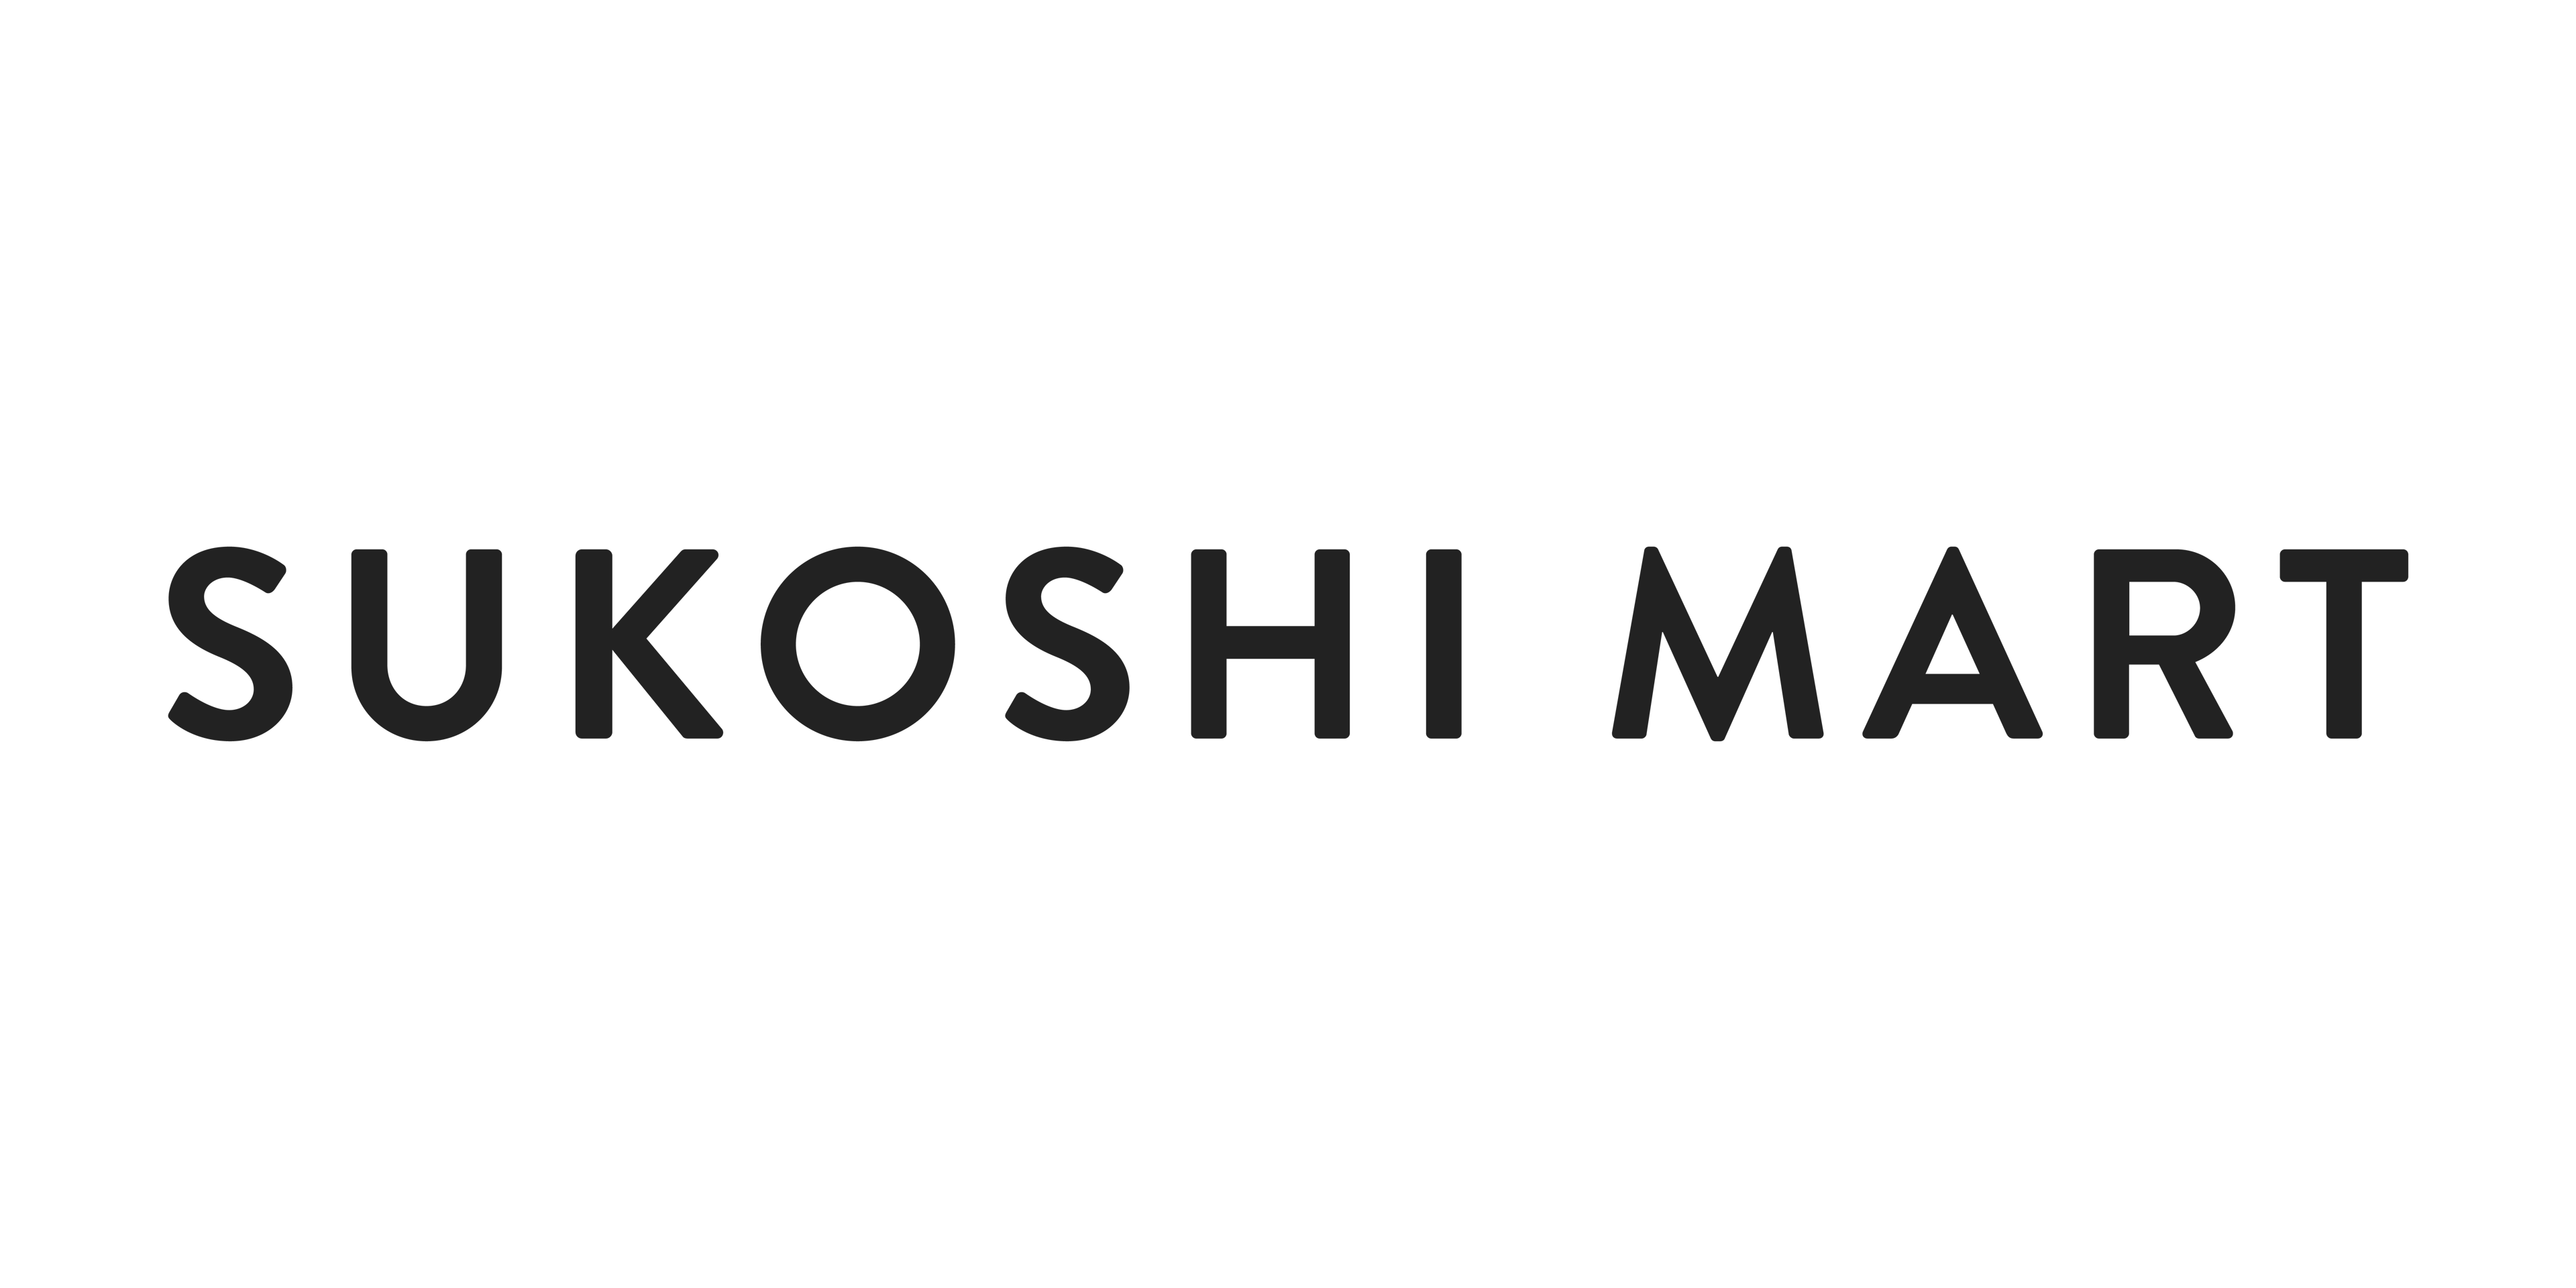 SUKOSHI-help logo